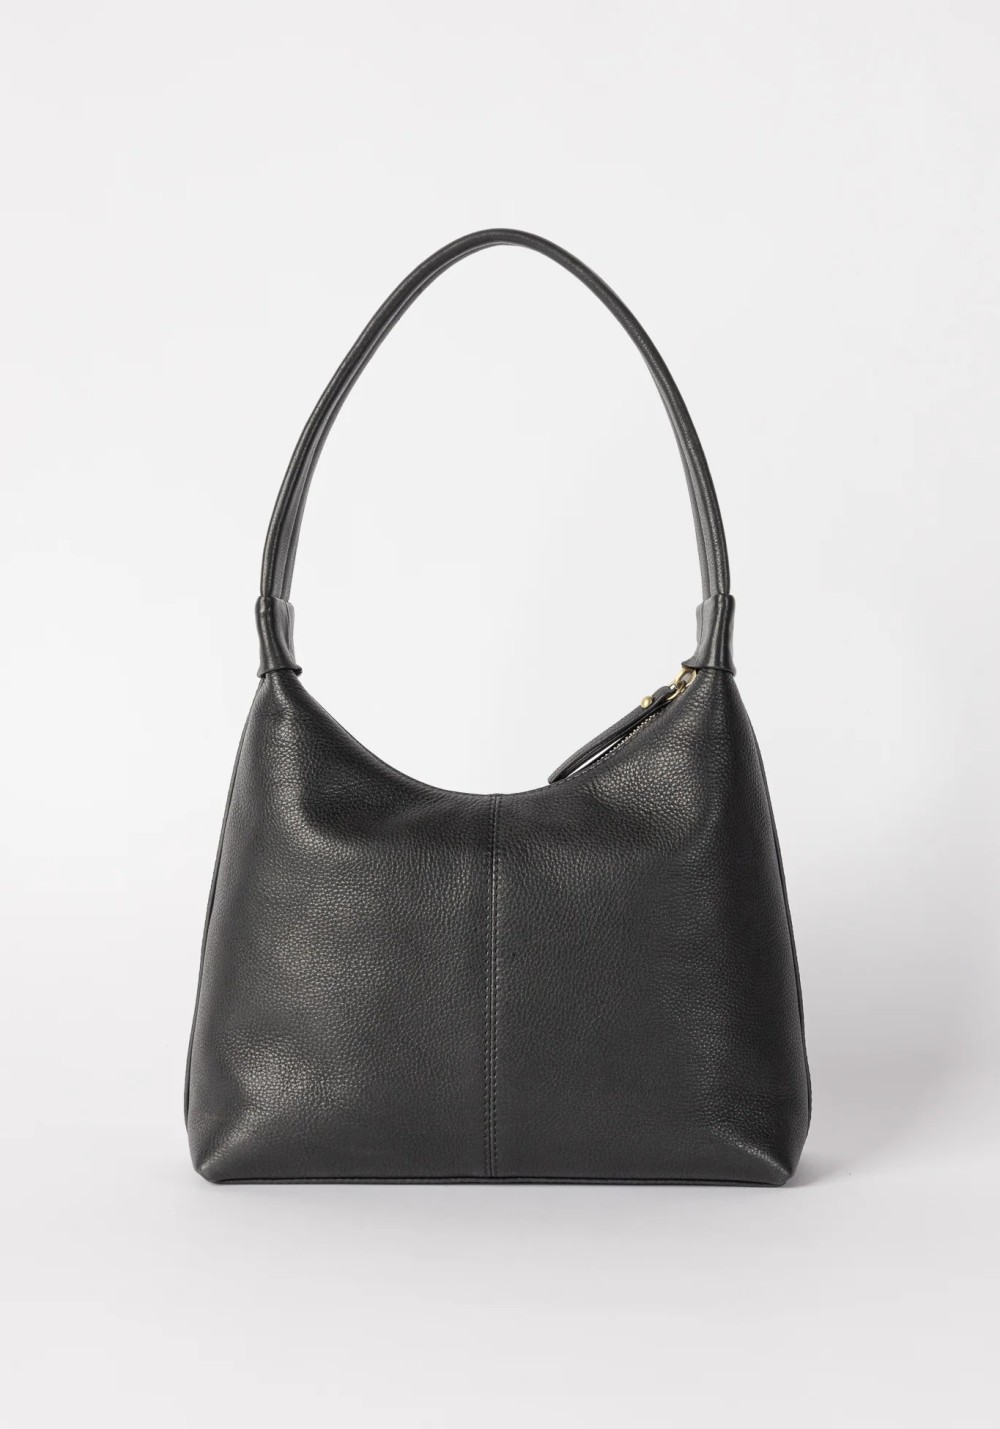 Handtasche Nora Black Soft Grain Leather